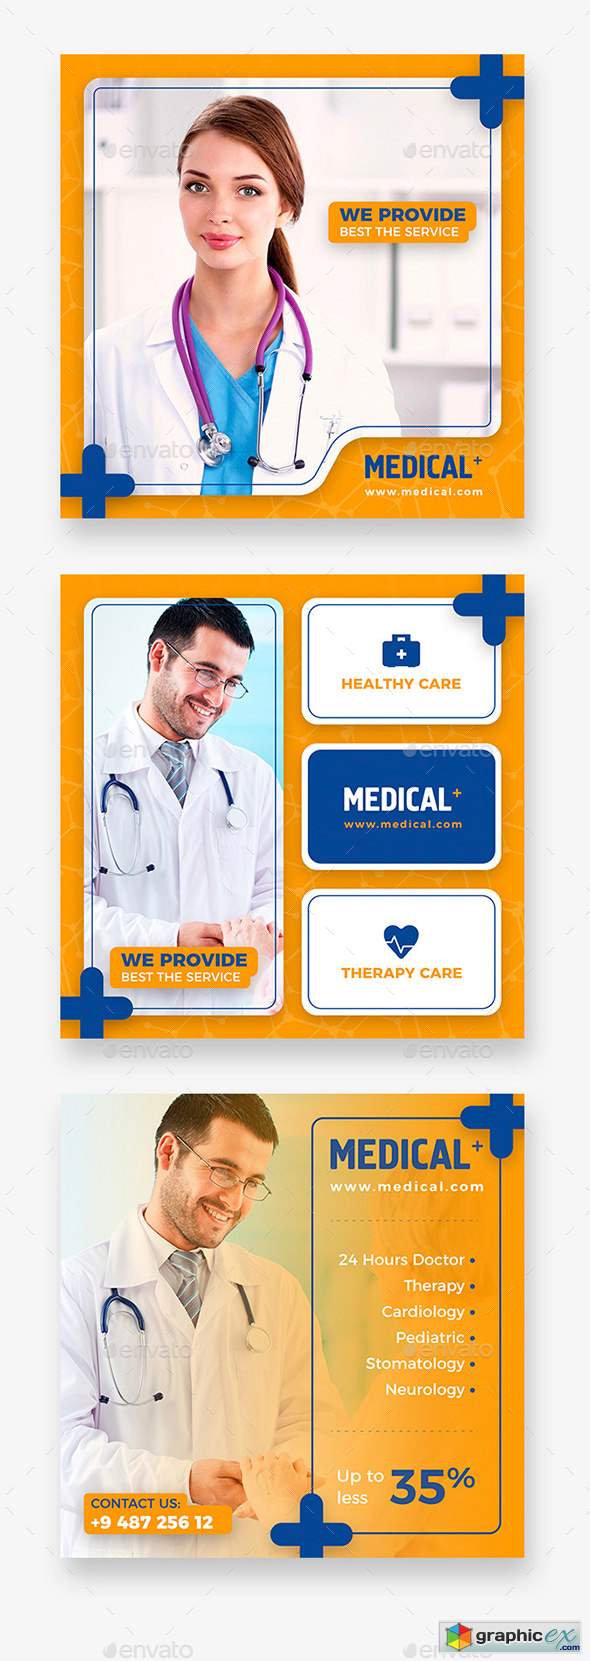 Medical Instagram Banner